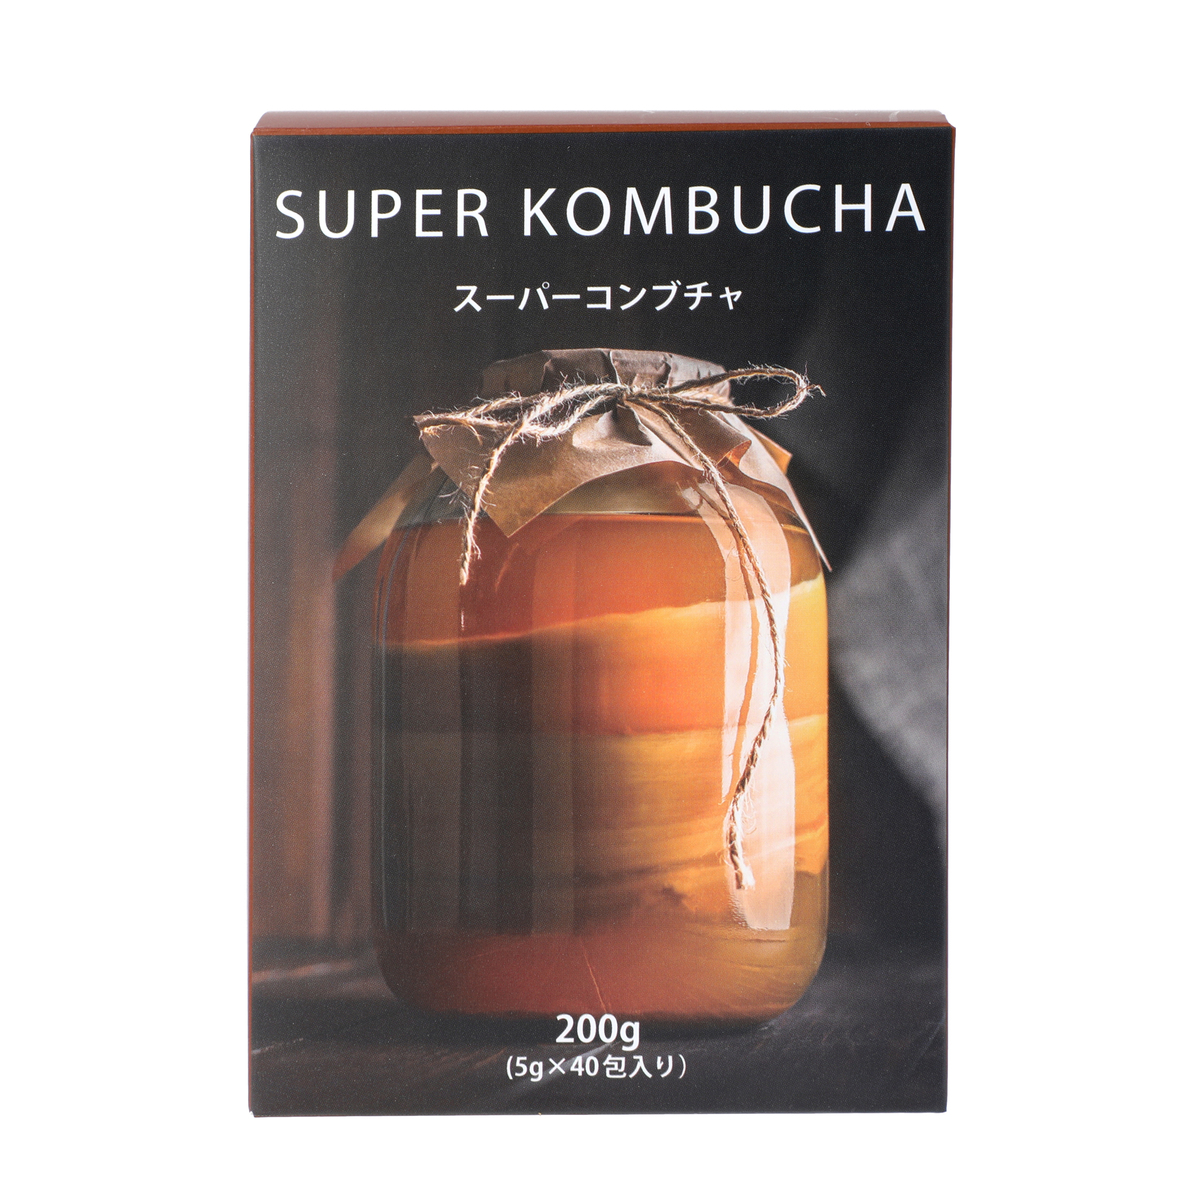 城咲仁 SUPER KOMBUCHA 4包 - ダイエット食品